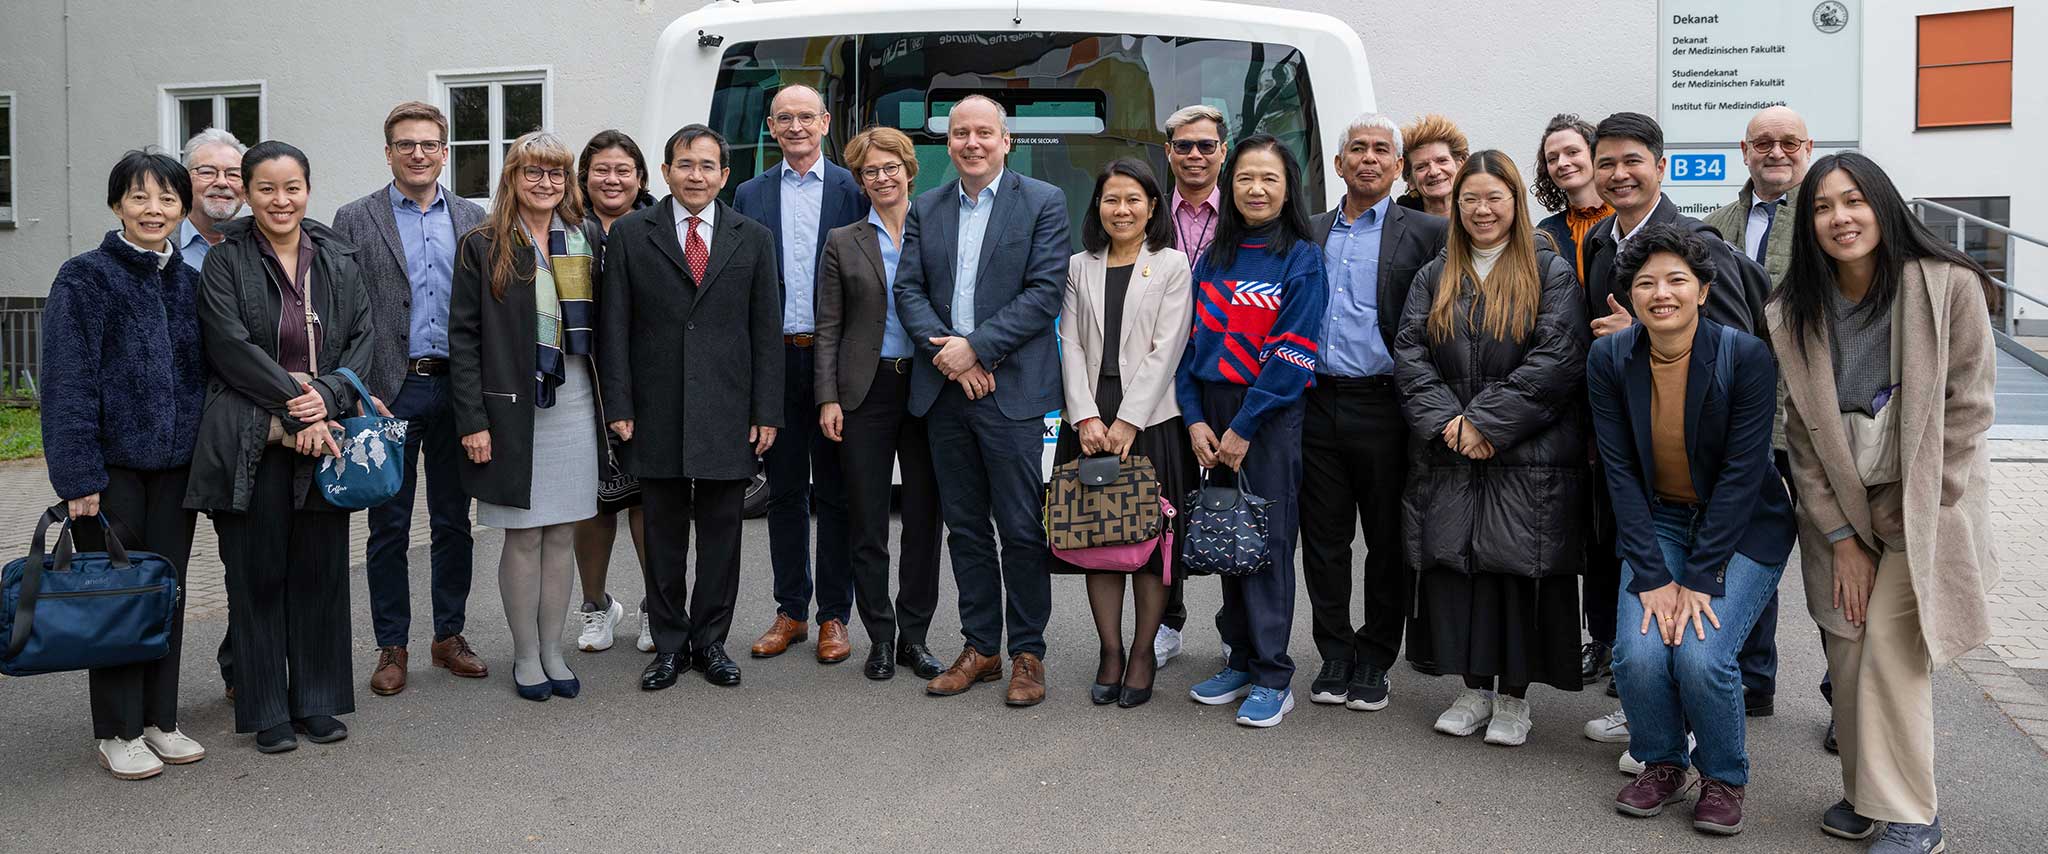 Thailändische Partneruniversitäten und Generalkonsulat besuchen Universitätsklinikum Bonn, Medizinisches Dekanat und Rektorat der Universität Bonn